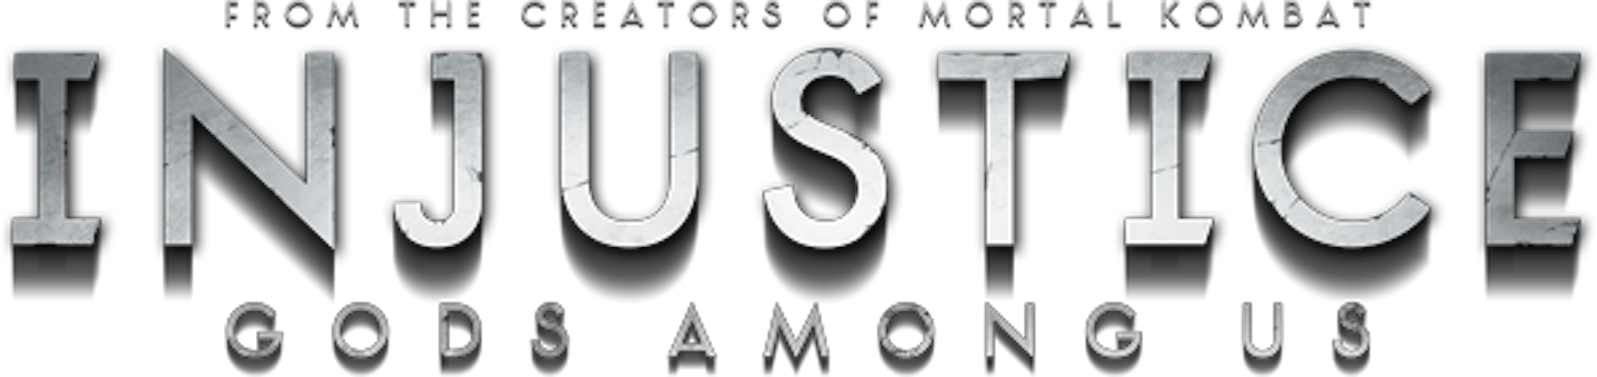 Injustice Logo Transparent Background PNG Image